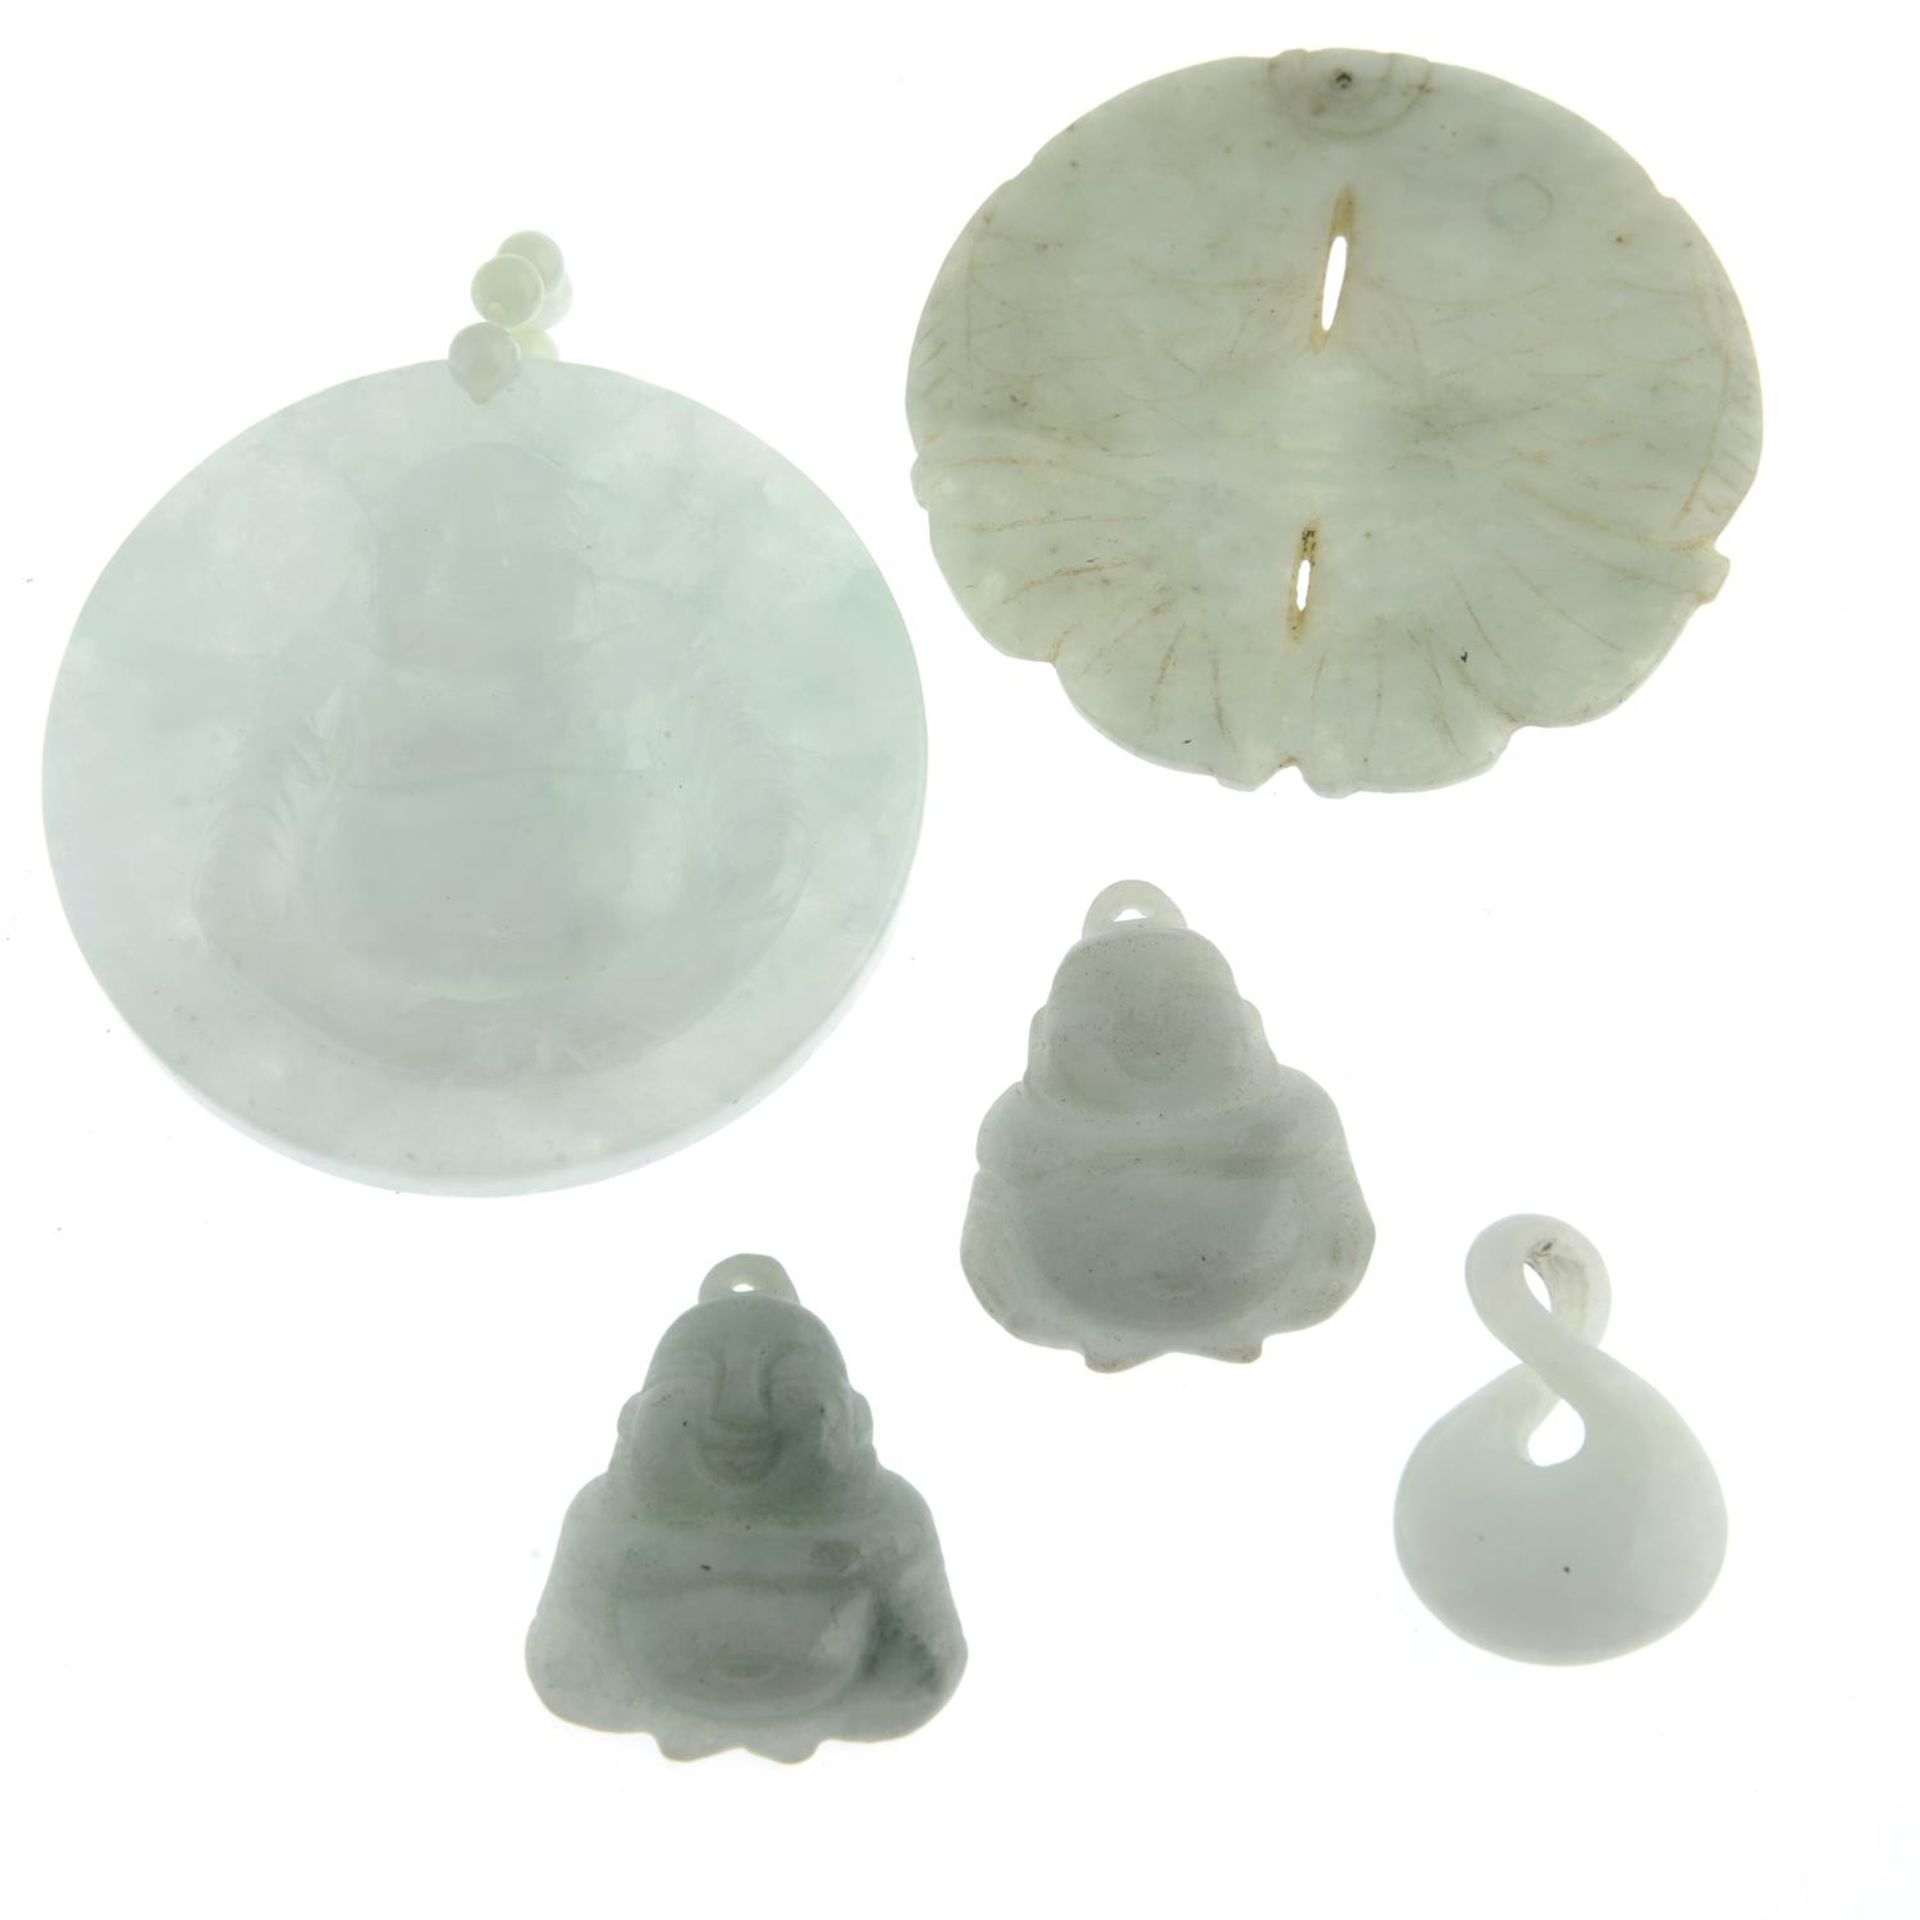 Five jade pendants.